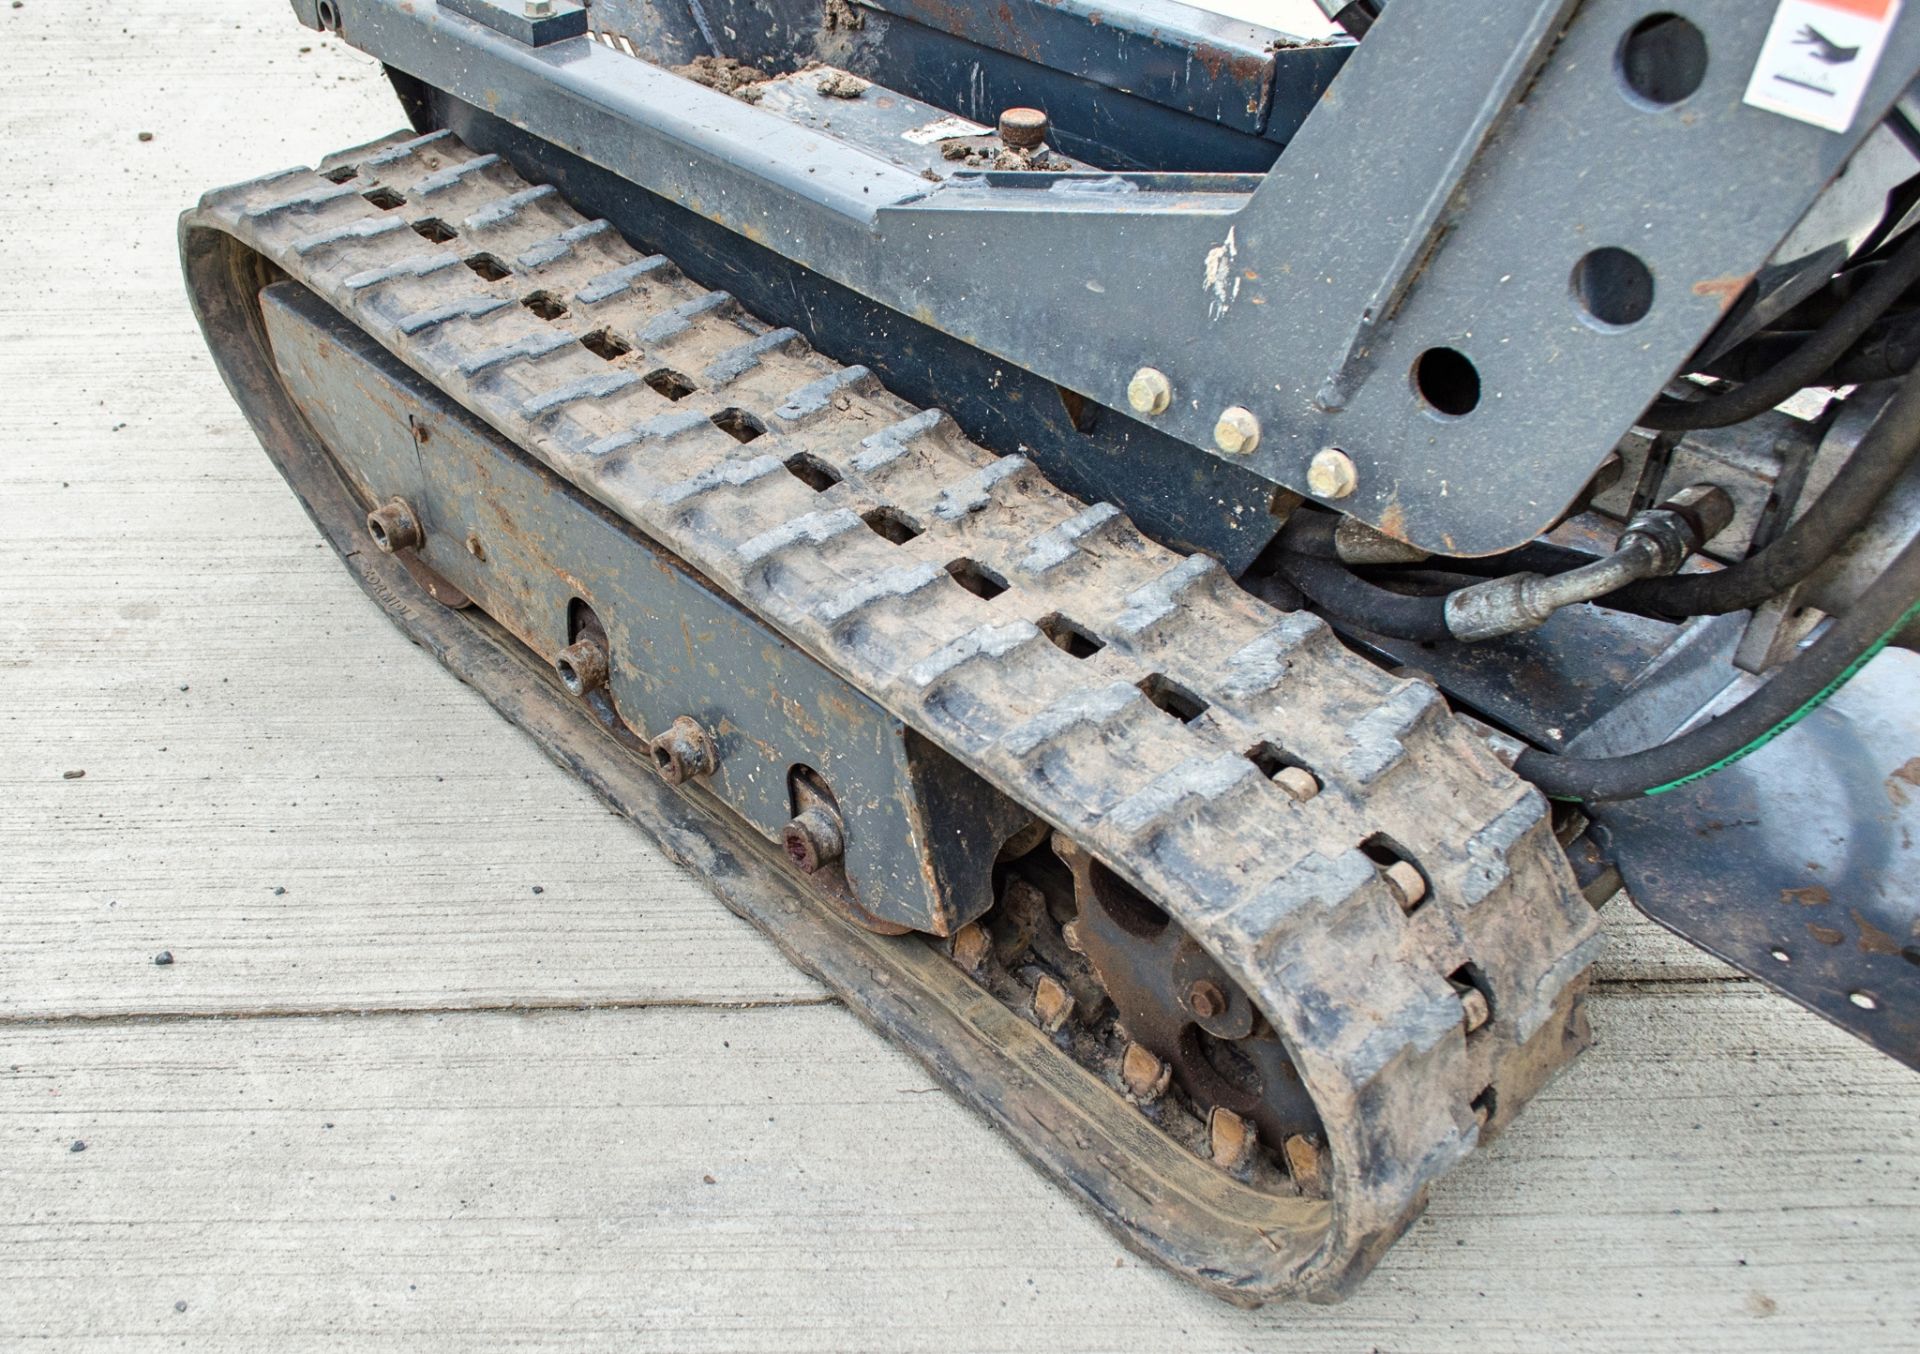 Cormidi C6.50 500 kg rubber tracked walk behind hi-tip dumper Year: 2006 S/N: 644439 - Image 12 of 14